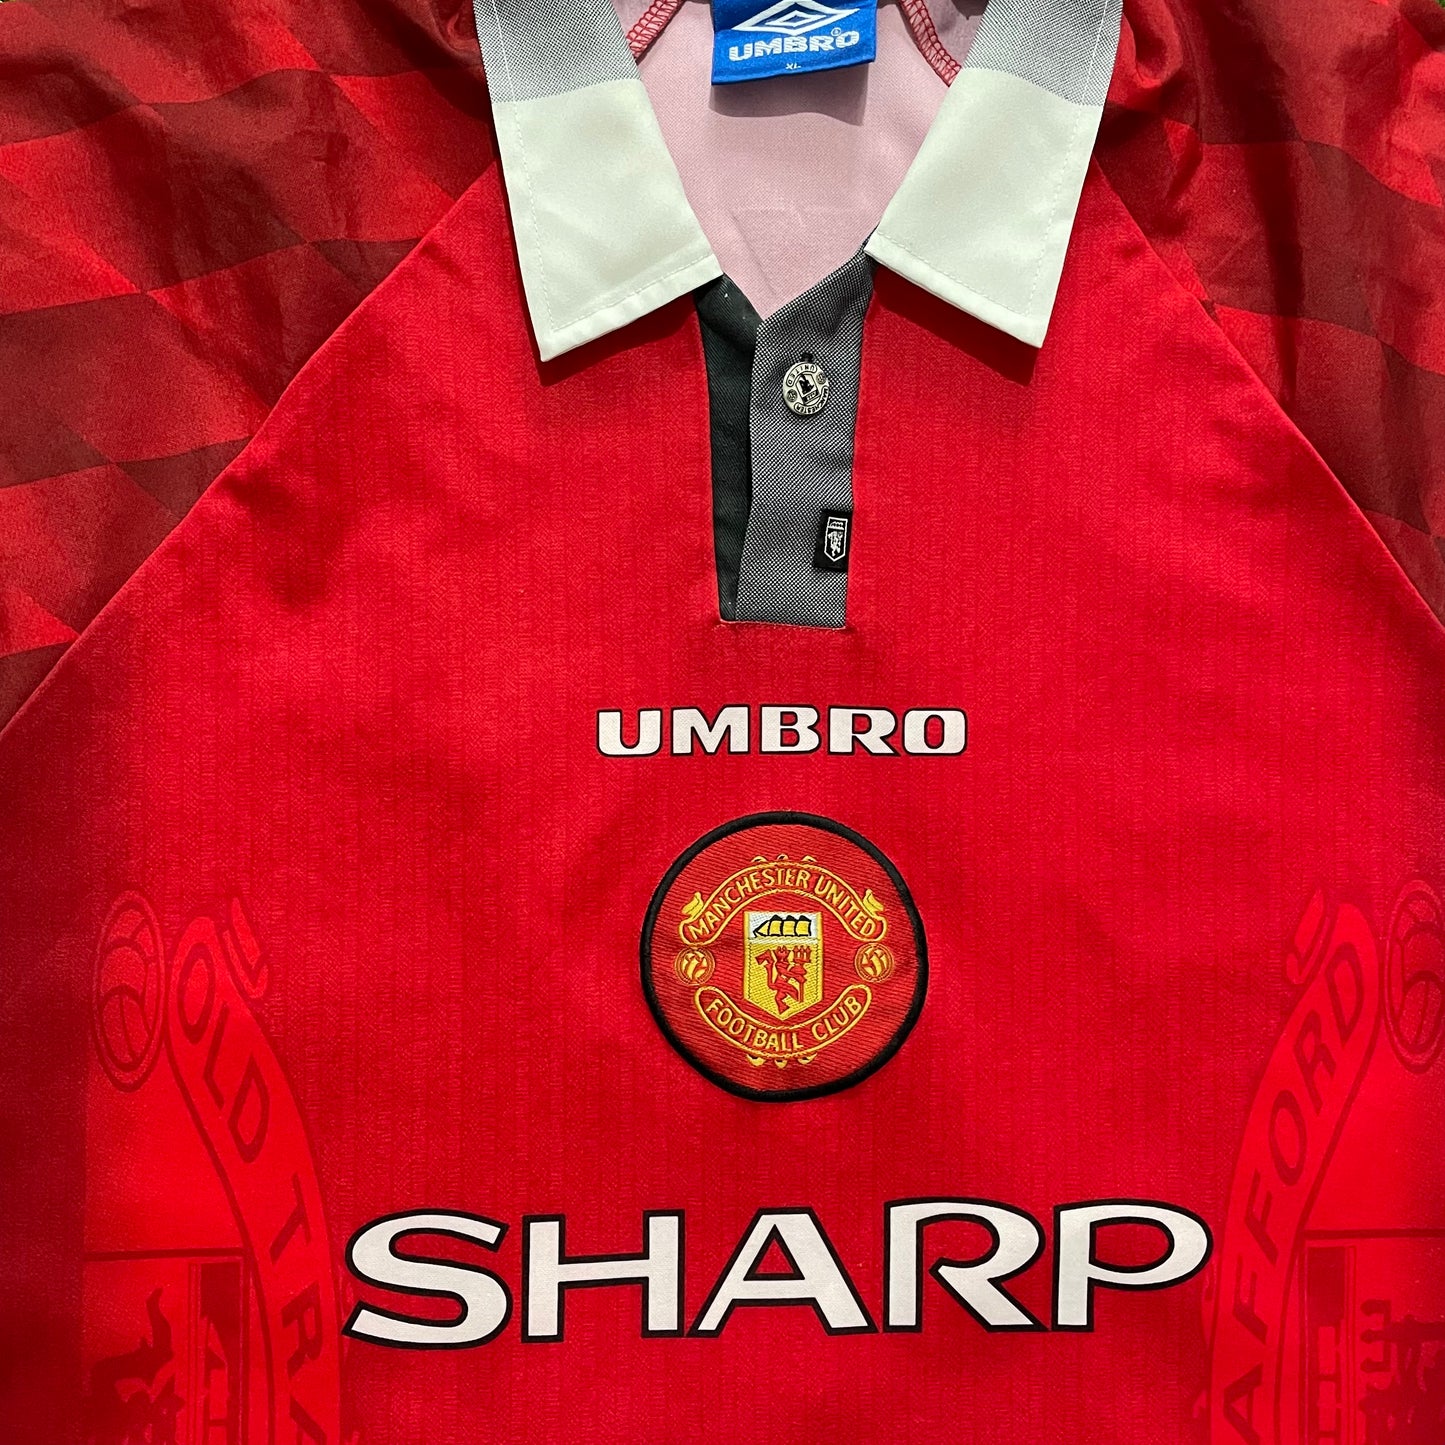 1996-1997 Manchester United FC home shirt #10 Beckham (XL)